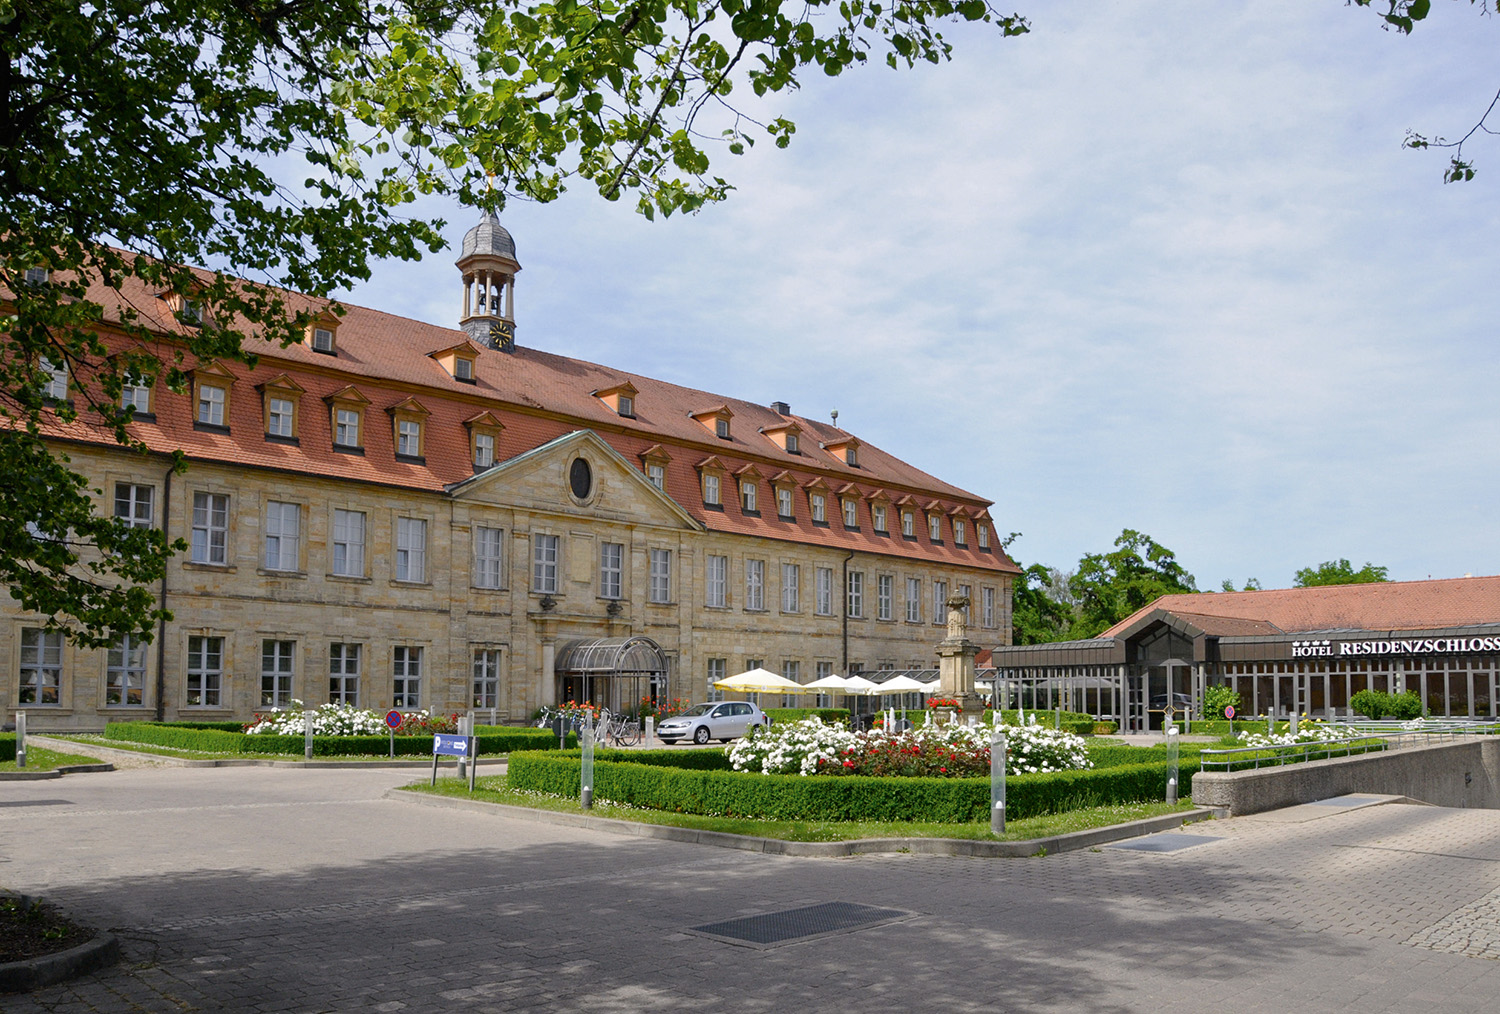 Welcome Hotel Residenzschloss, Bamberg.
